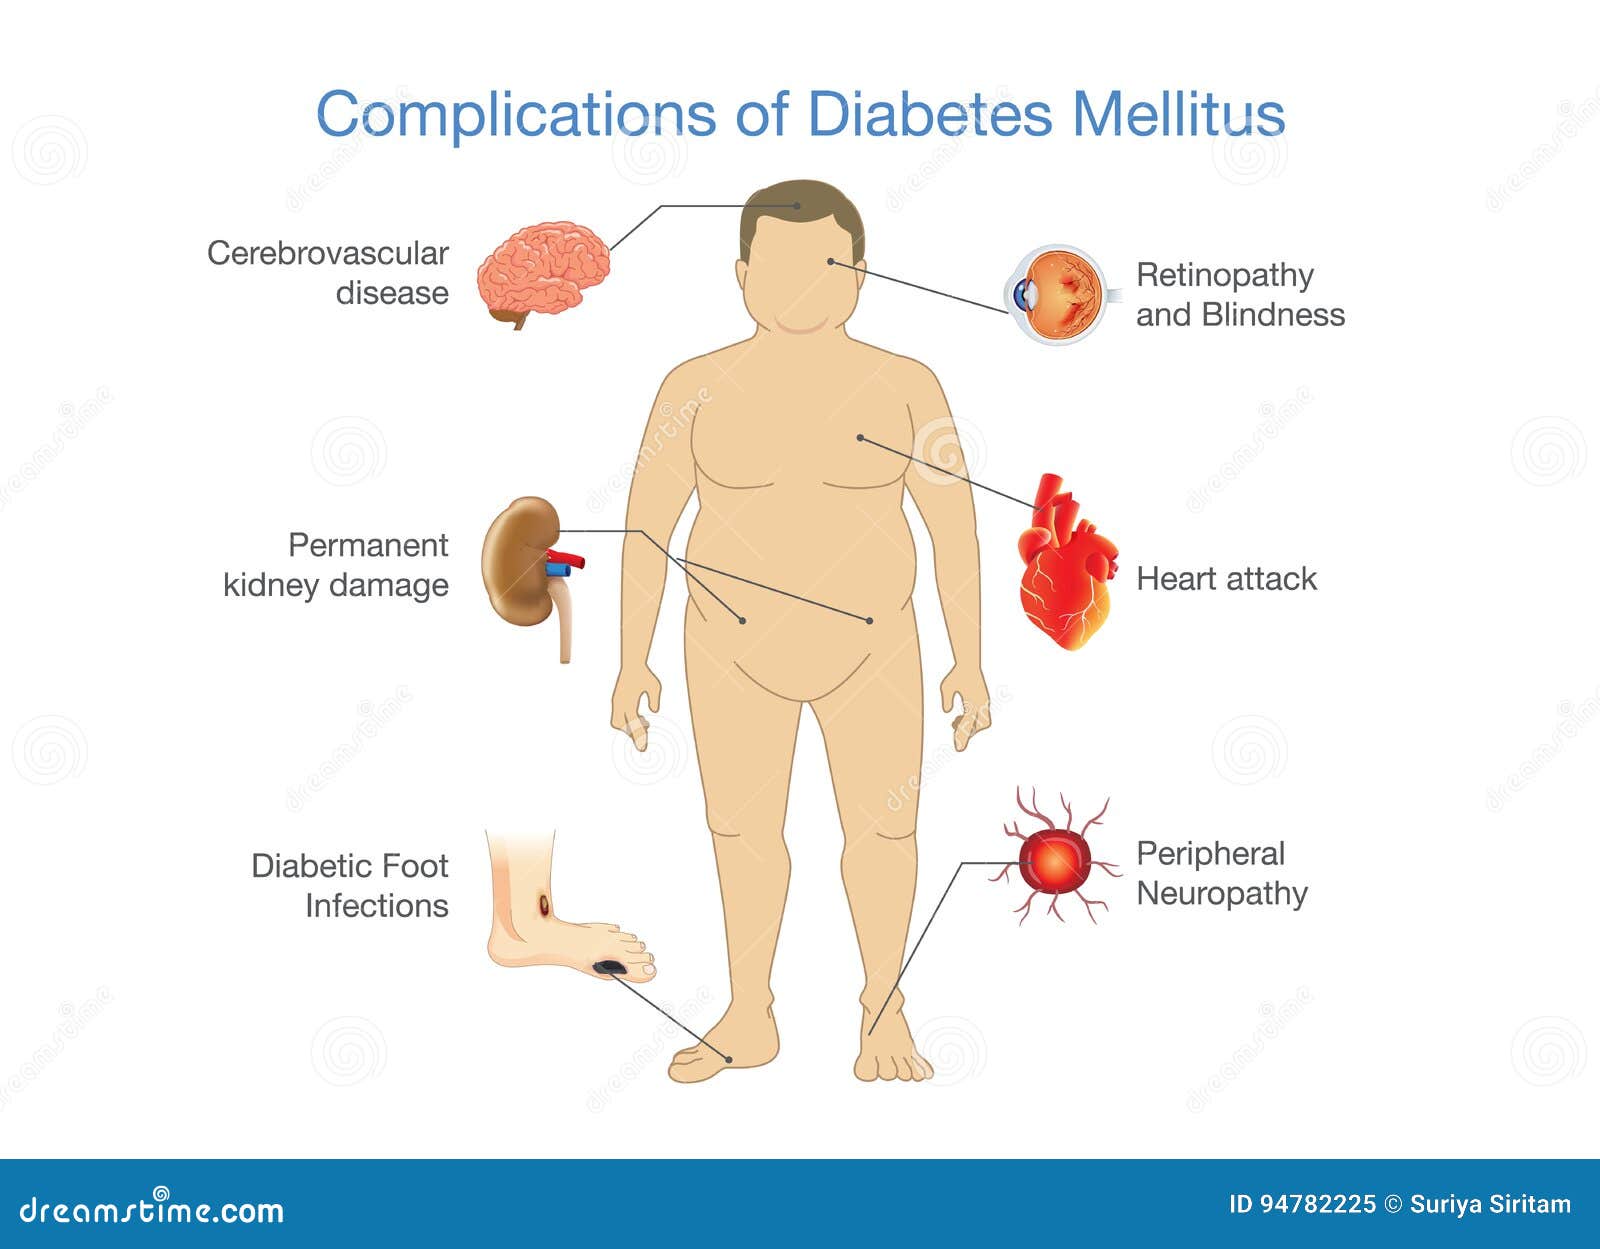 coms diabetes mellitus)